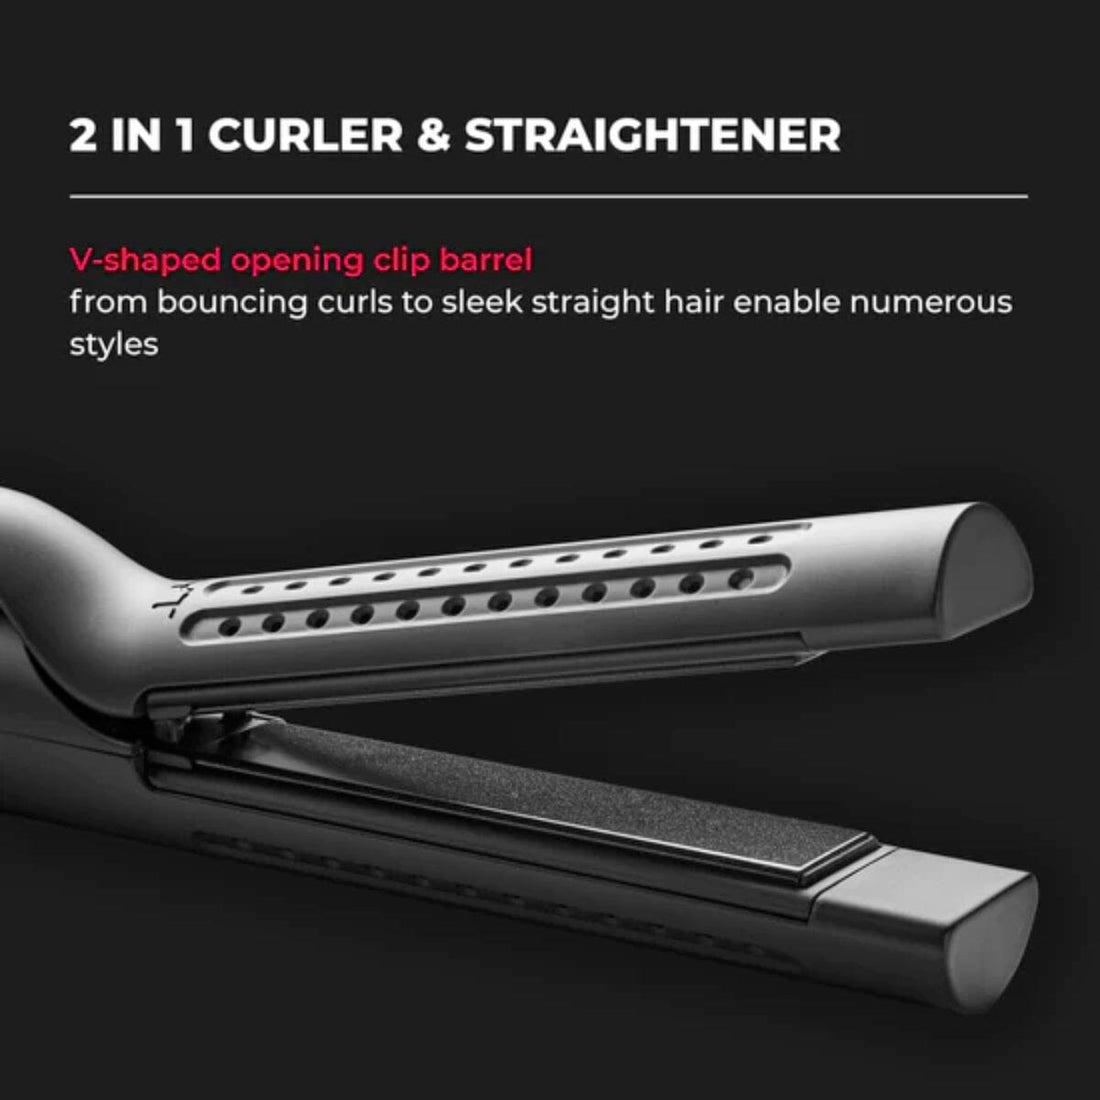 HairMNL TYMO Airflow 2-in-1 Hair Curler Straightener Black HC-506 Features